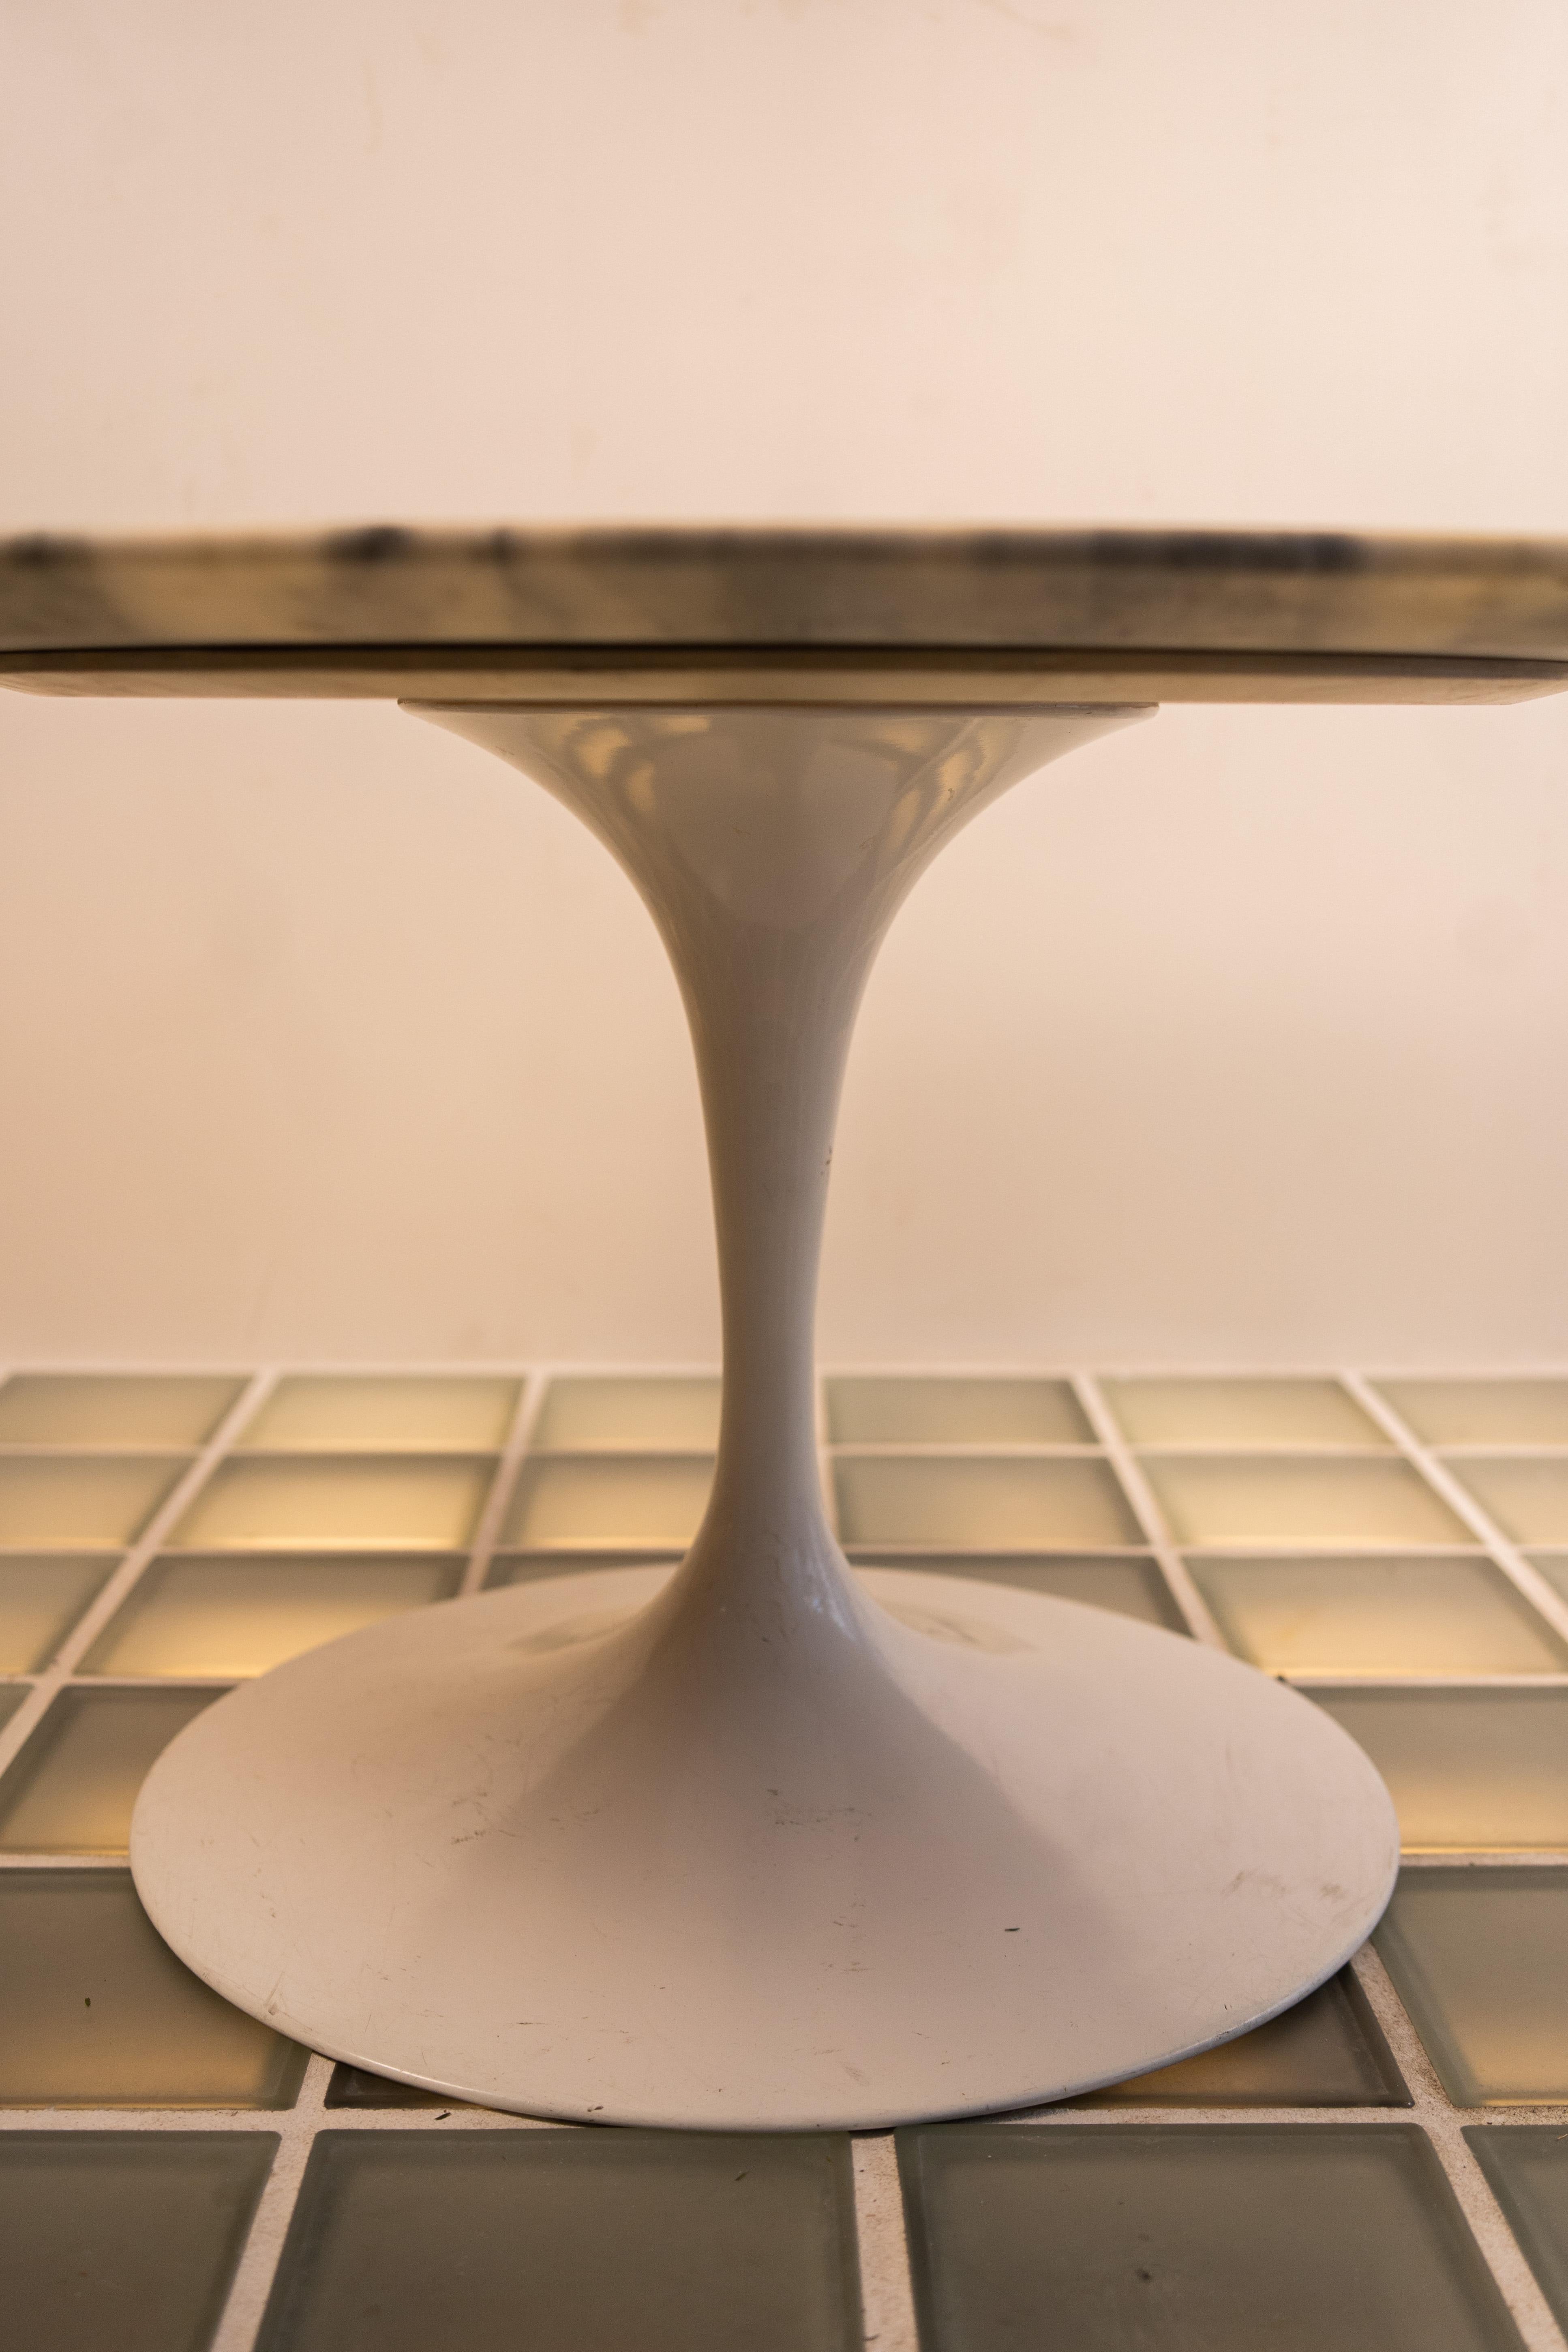 Ovaler Tulpen-Couchtisch aus Marmor von Eero Saarinen für Knoll International
Sockelsammlung
Die Marmorplatte ist 2 cm dick; das weiße Laminat ist 3 cm dick
Der Sockel ist schwer und besteht aus gegossenem Aluminium, das mit Rilsan geschützt ist,